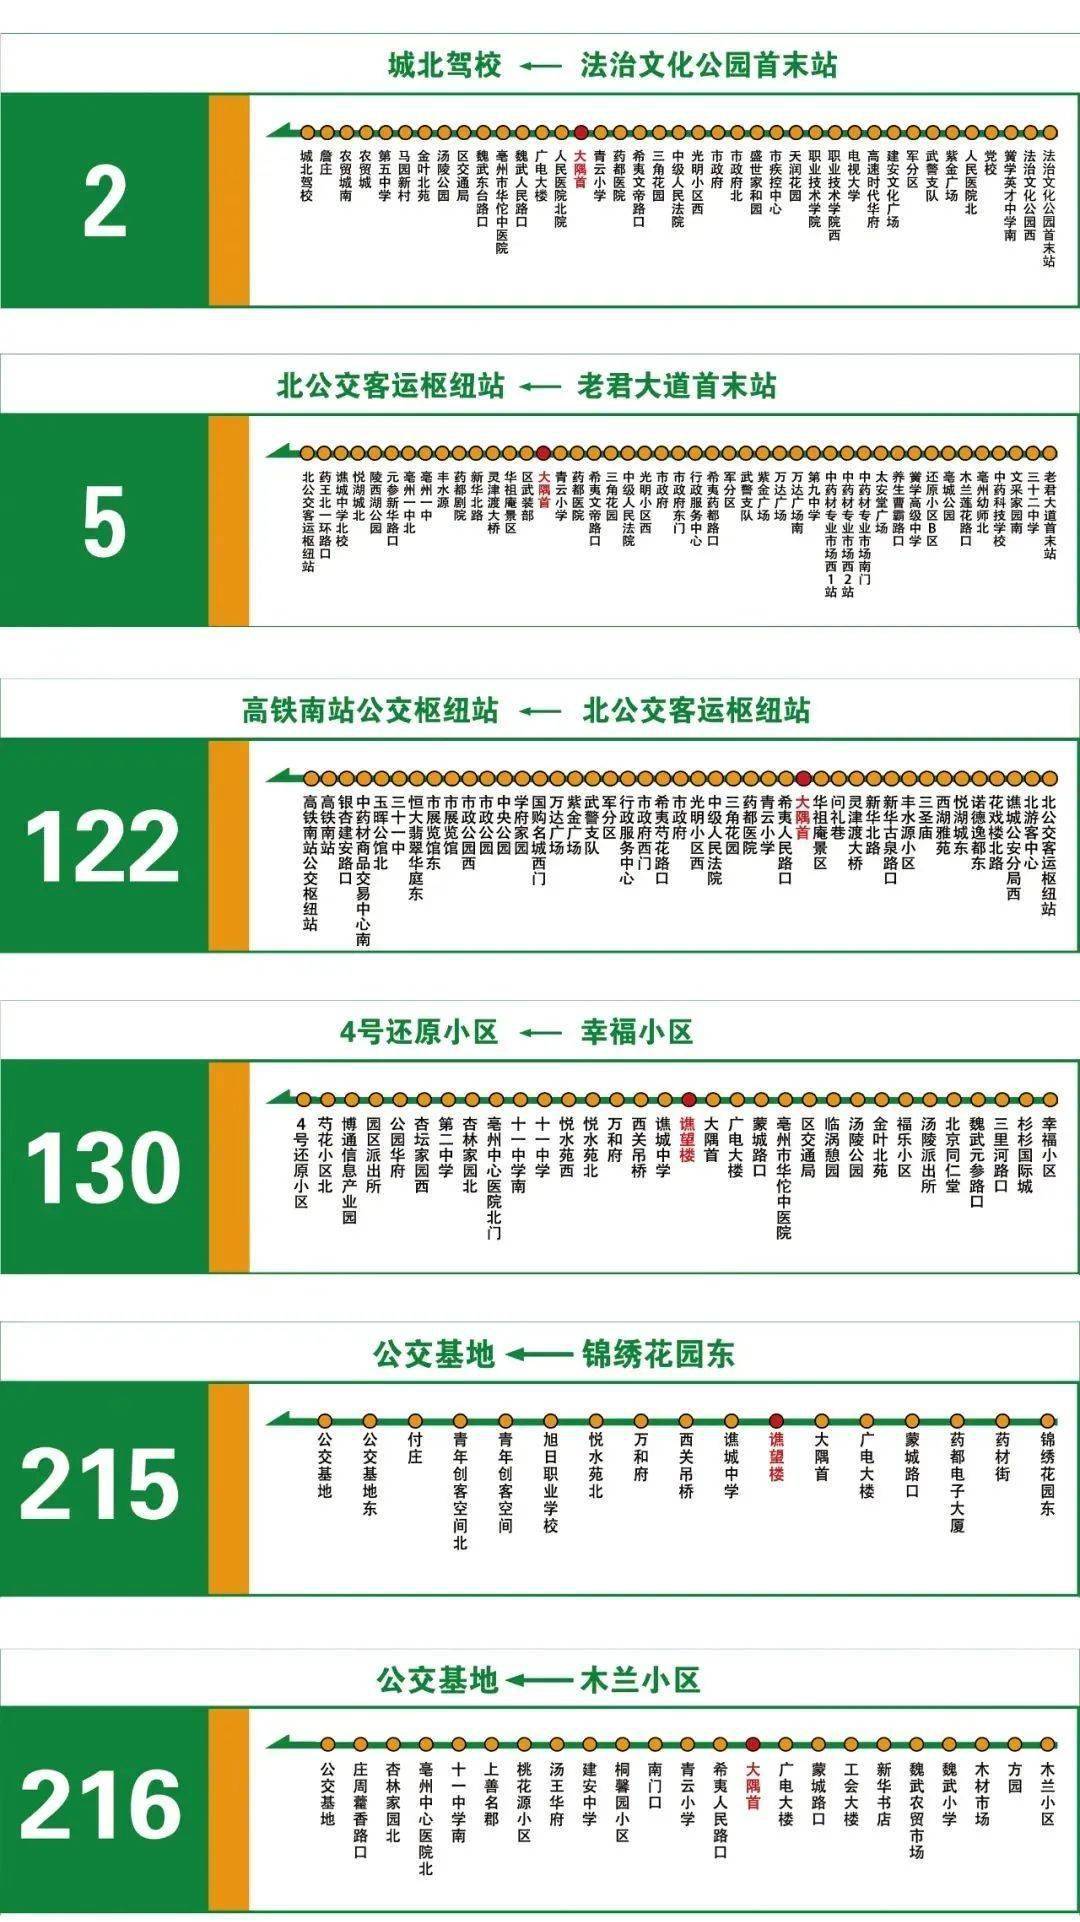 亳州117路公交车路线图图片